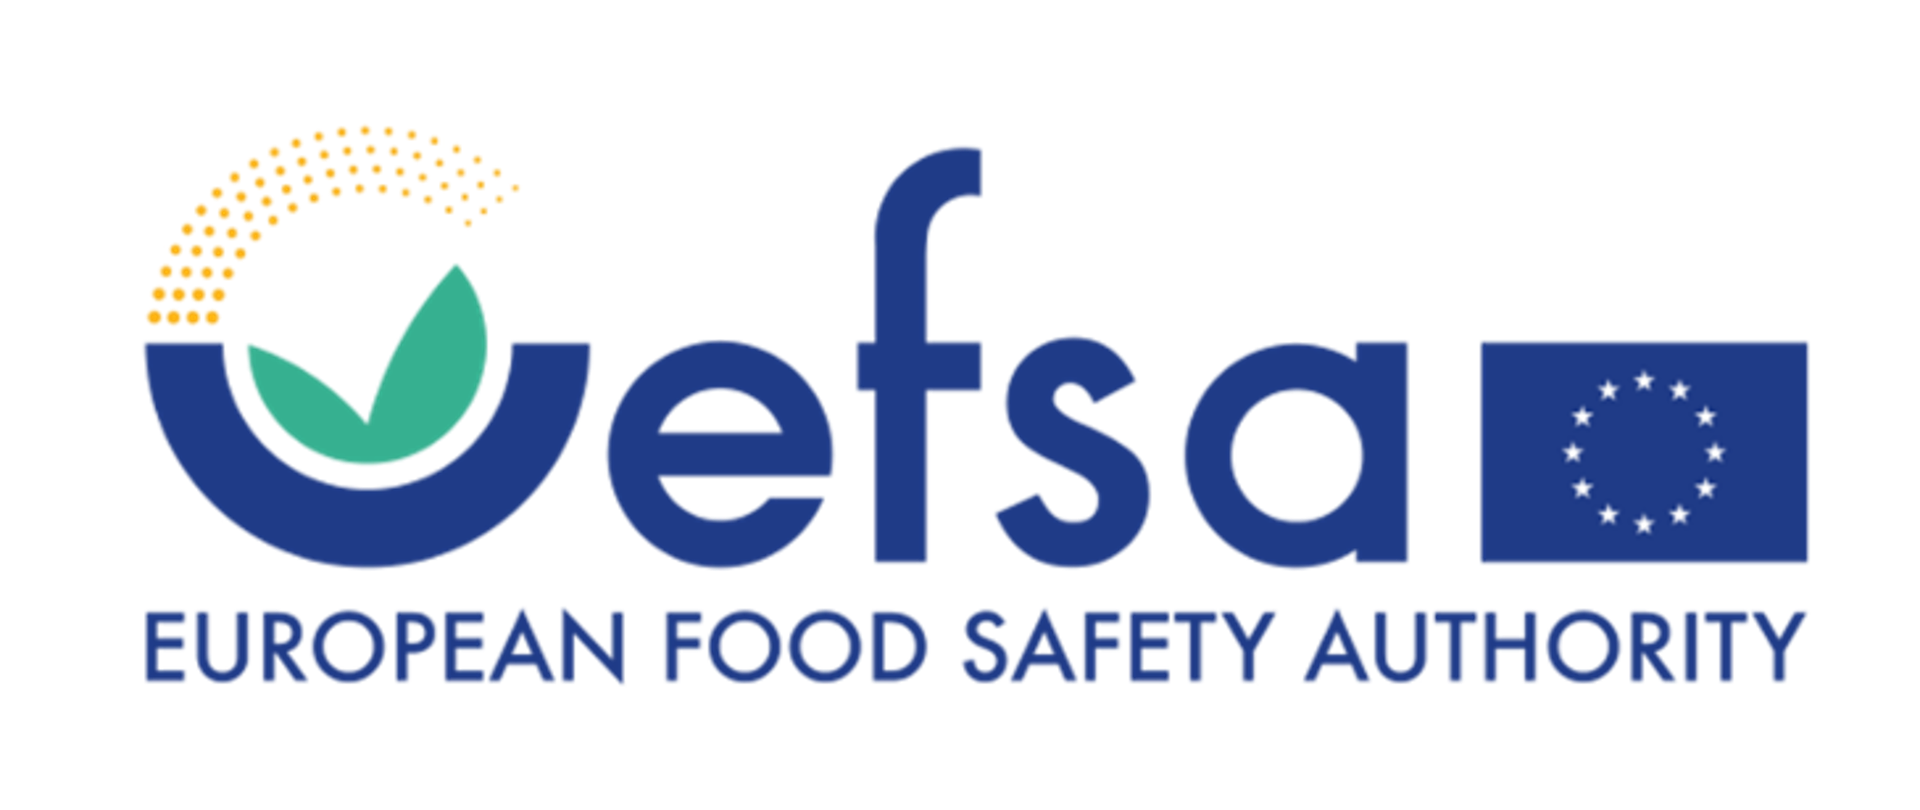 logo: napis EFSA i EUROPEAN FOOD SAFETY AUTHORITY oraz flaga europejska